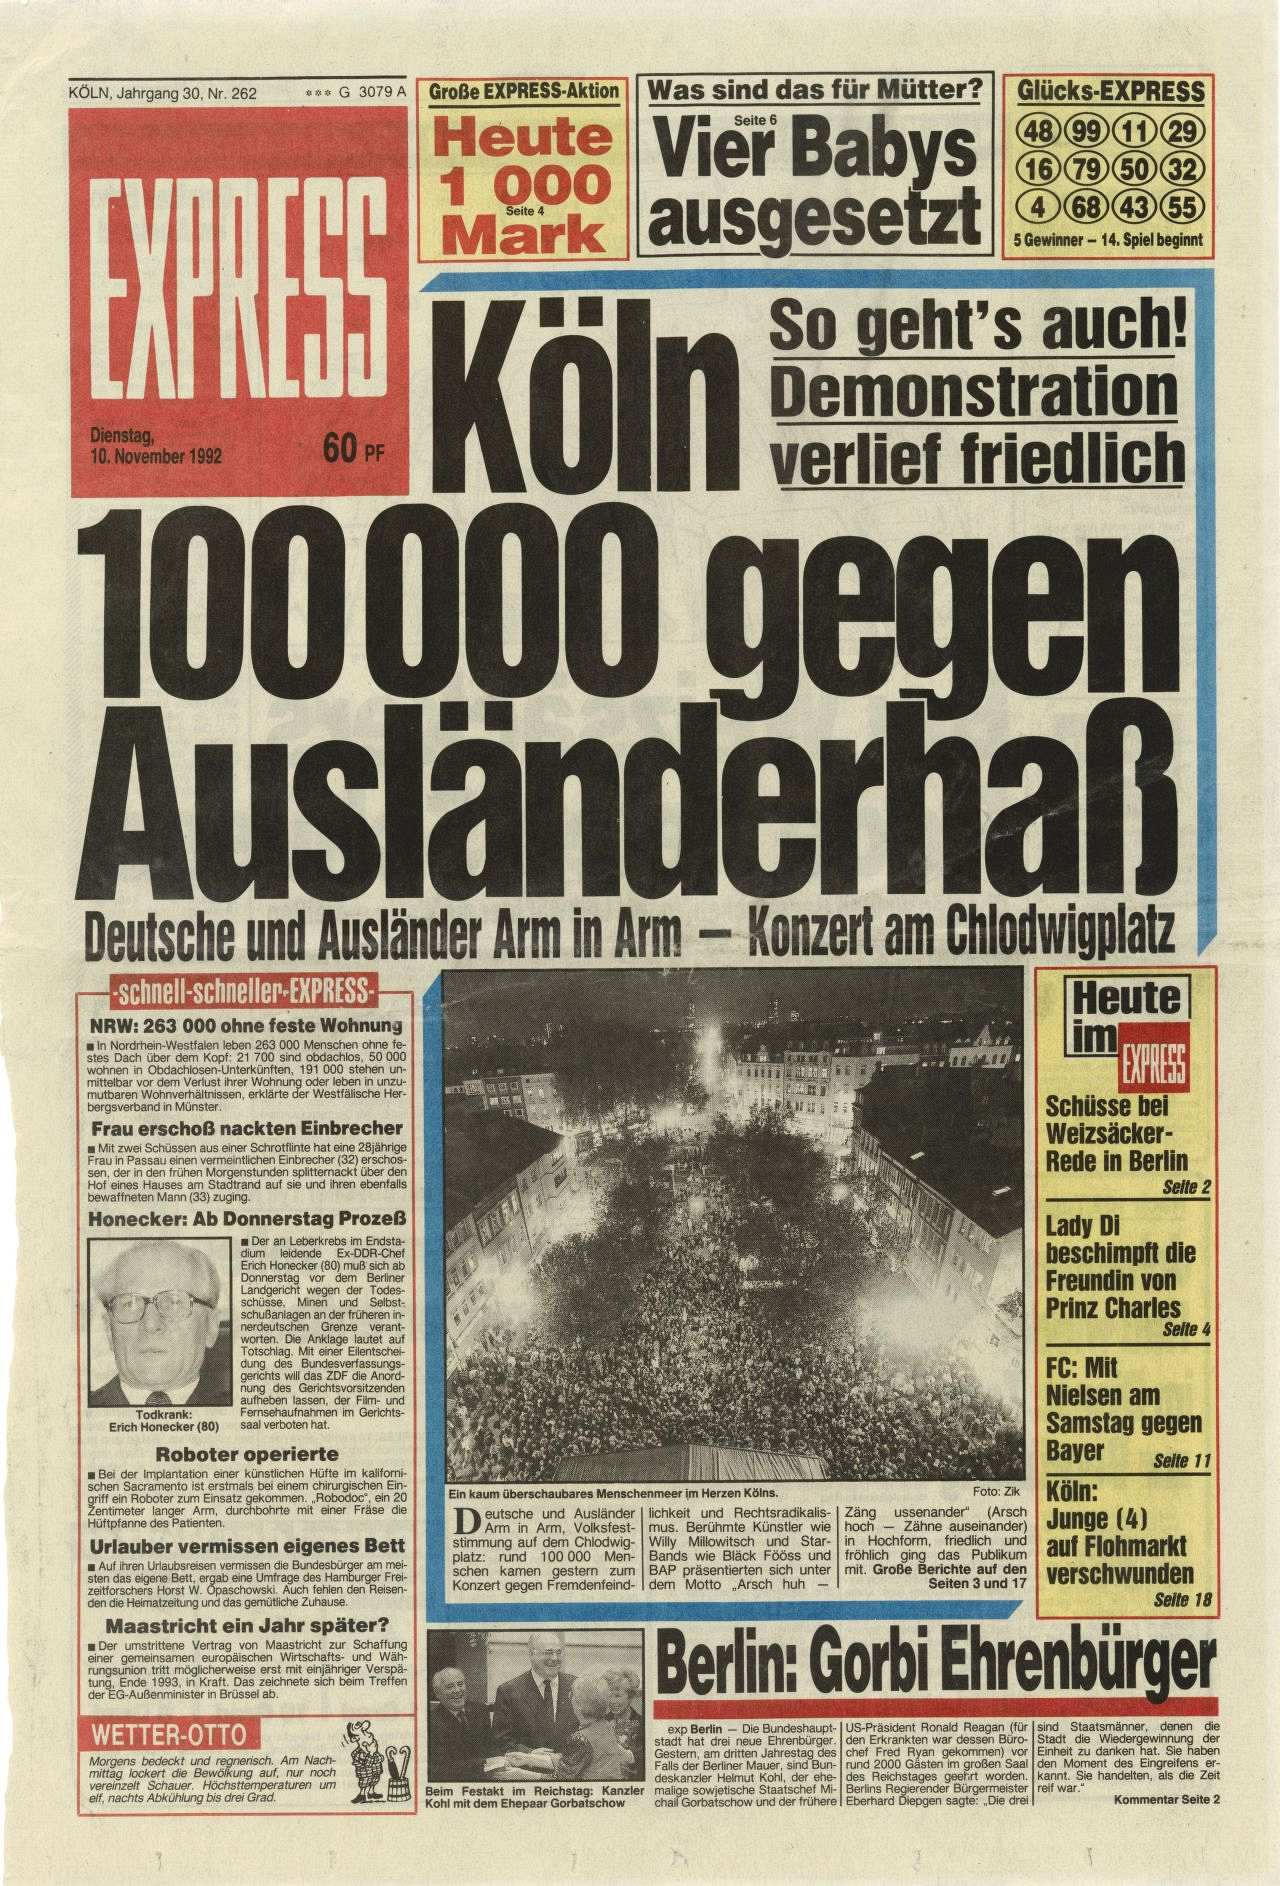 Titelseite des Express vom 10.11.1992; Schlagzeile: Köln / 100000 gegen / Ausländerhaß / Deutsche und Ausländer Arm in Arm - Konzert am Chlodwigplatz / So geht's auch! / Demonstration / verlief friedlich.